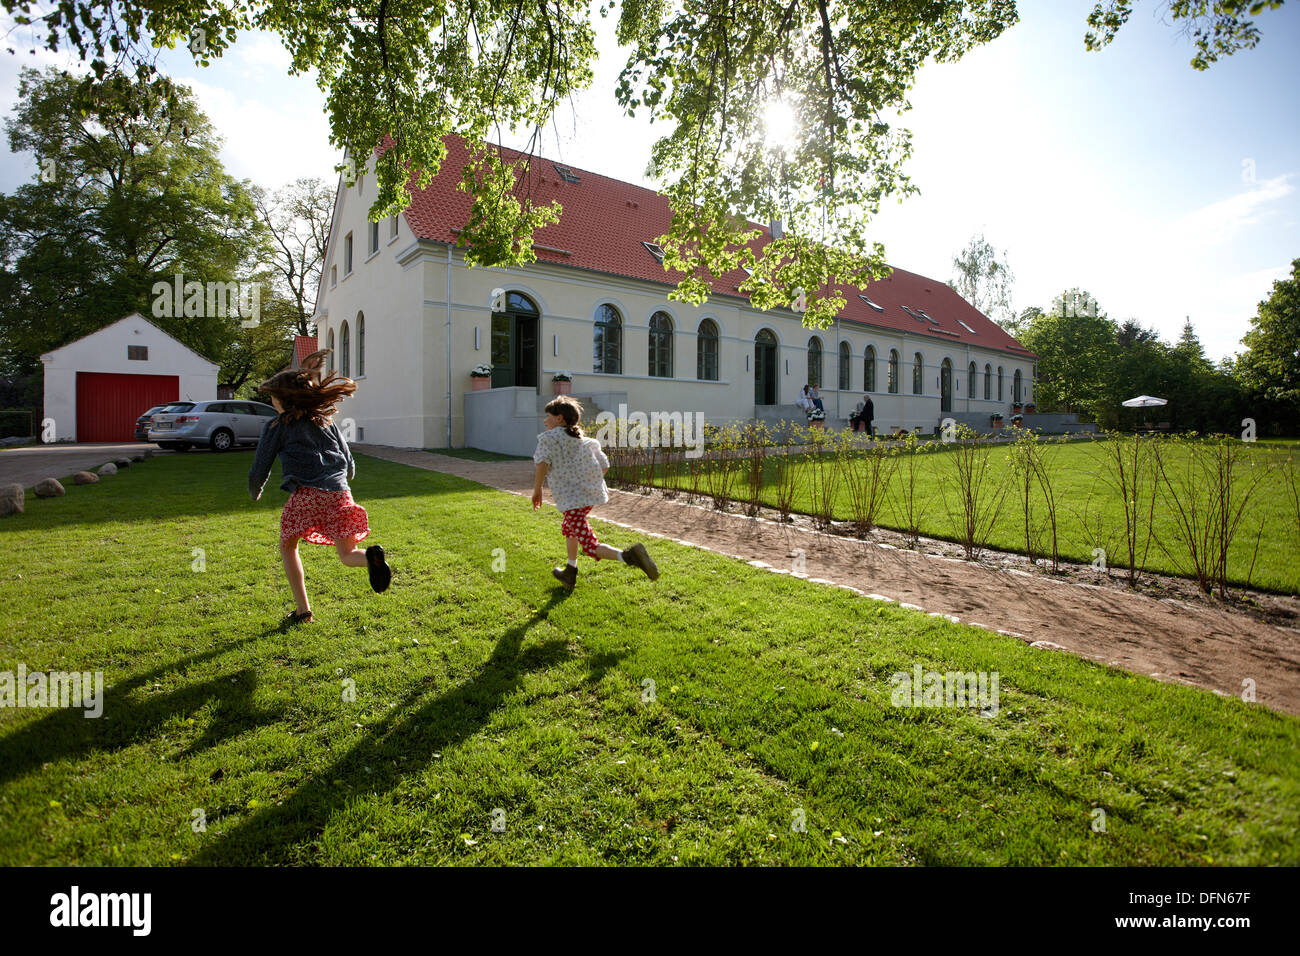 Les enfants courent sur une prairie près d'un hôtel, Fincken, Mecklembourg-Poméranie-Occidentale, Allemagne Banque D'Images